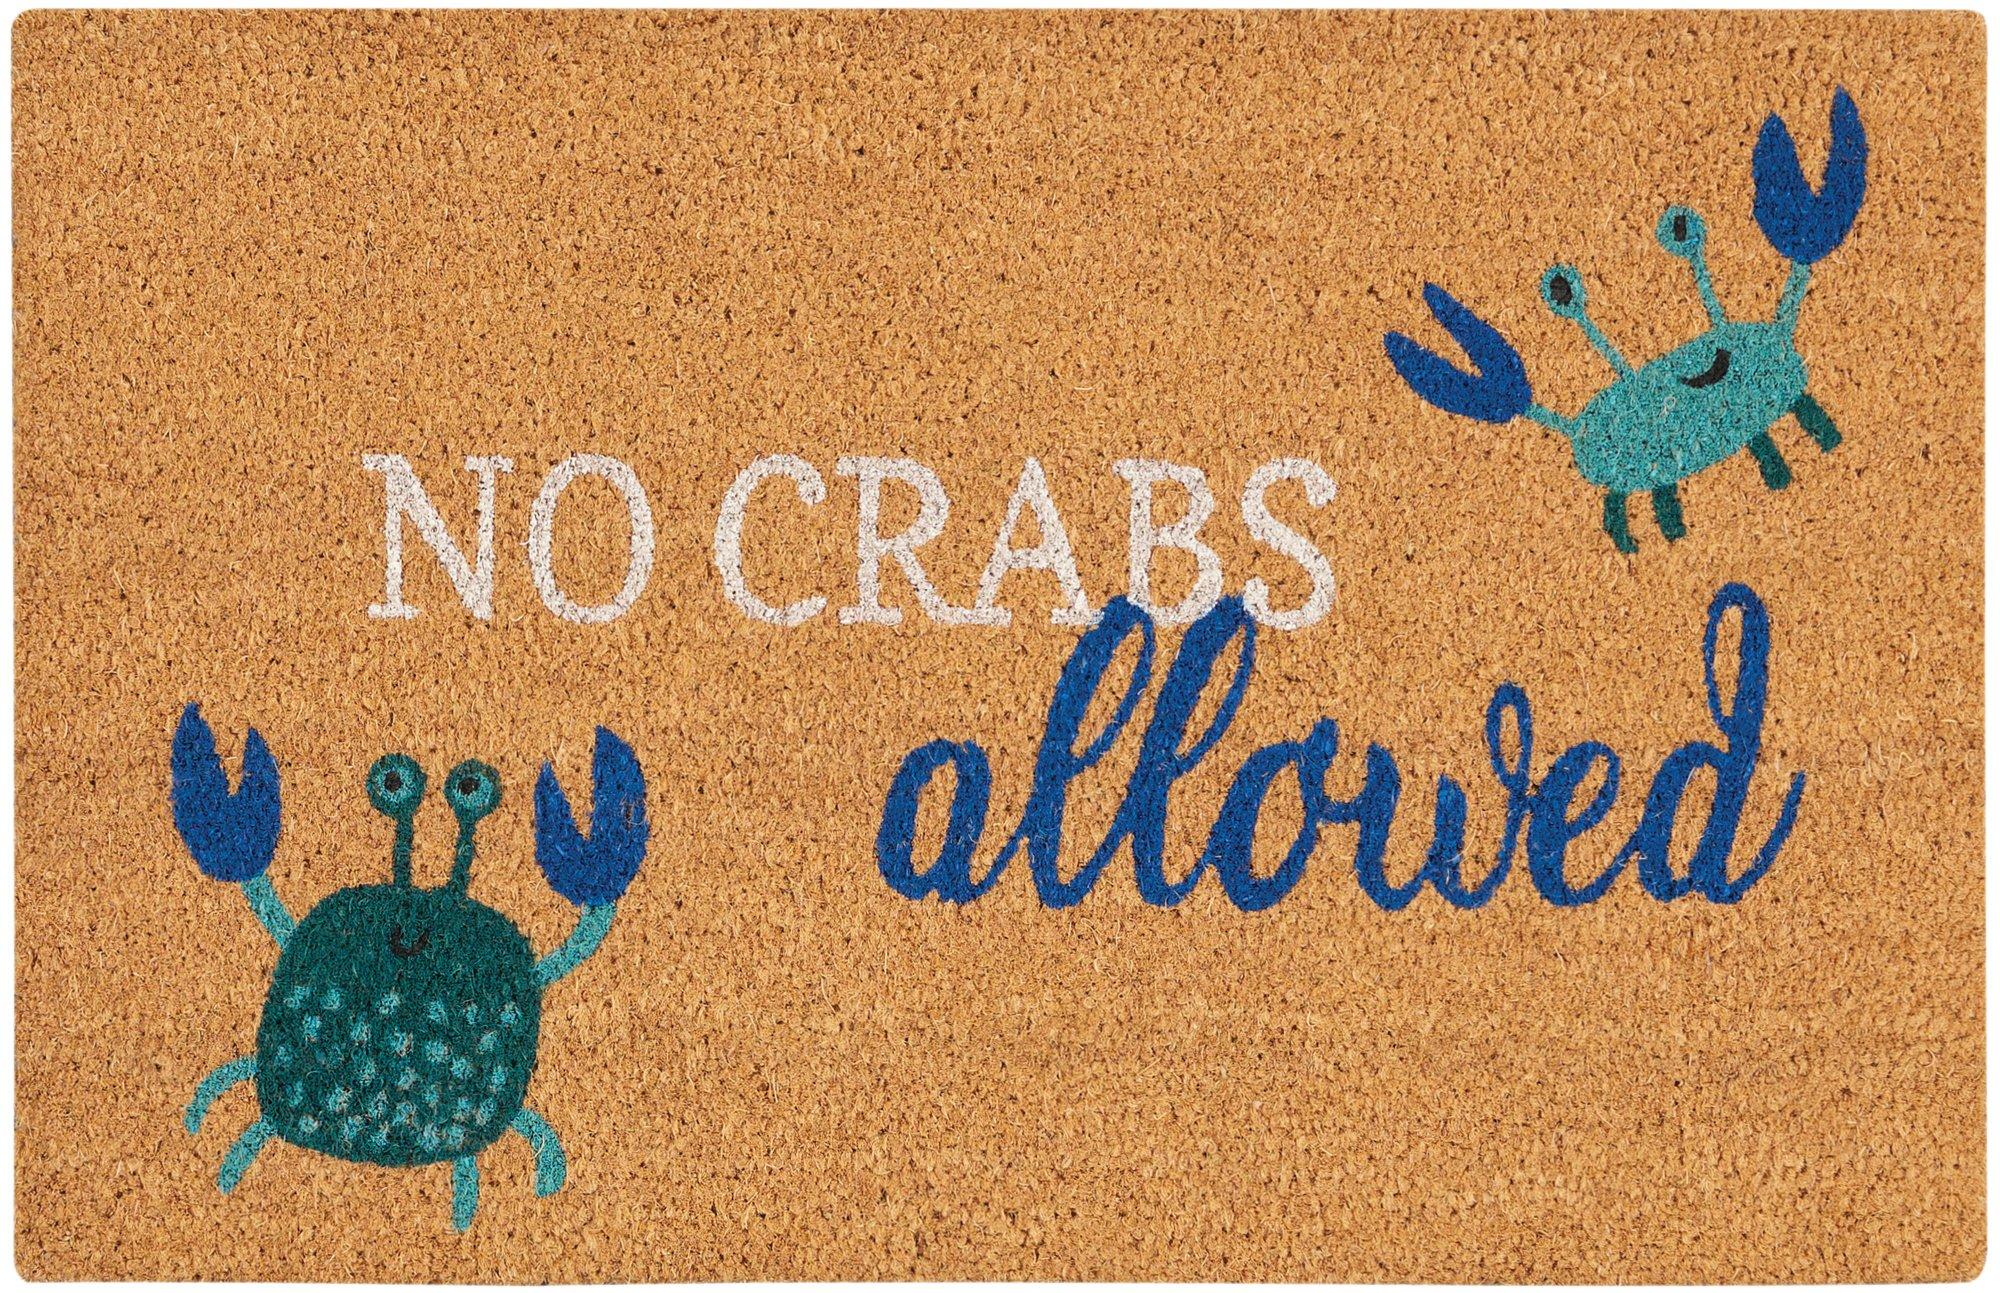 Nourison No Crabs Allowed Coir Doormat